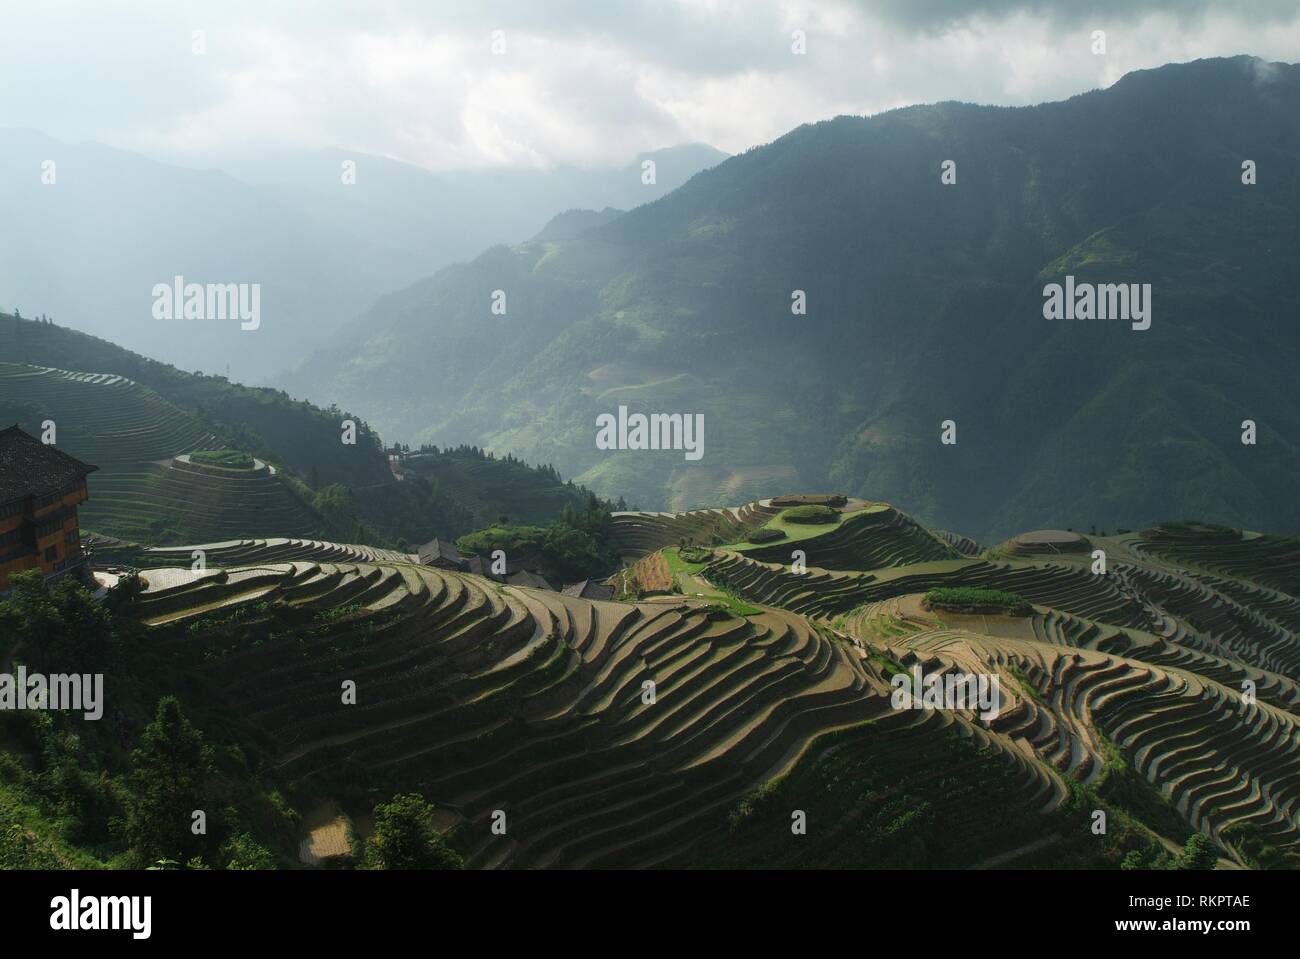 Una sezione della spettacolare Longji - Dragon's Backbone terrazze di riso a Ping An, Longshen County. Tagliato in i contorni del terreno e gestiti da m Foto Stock